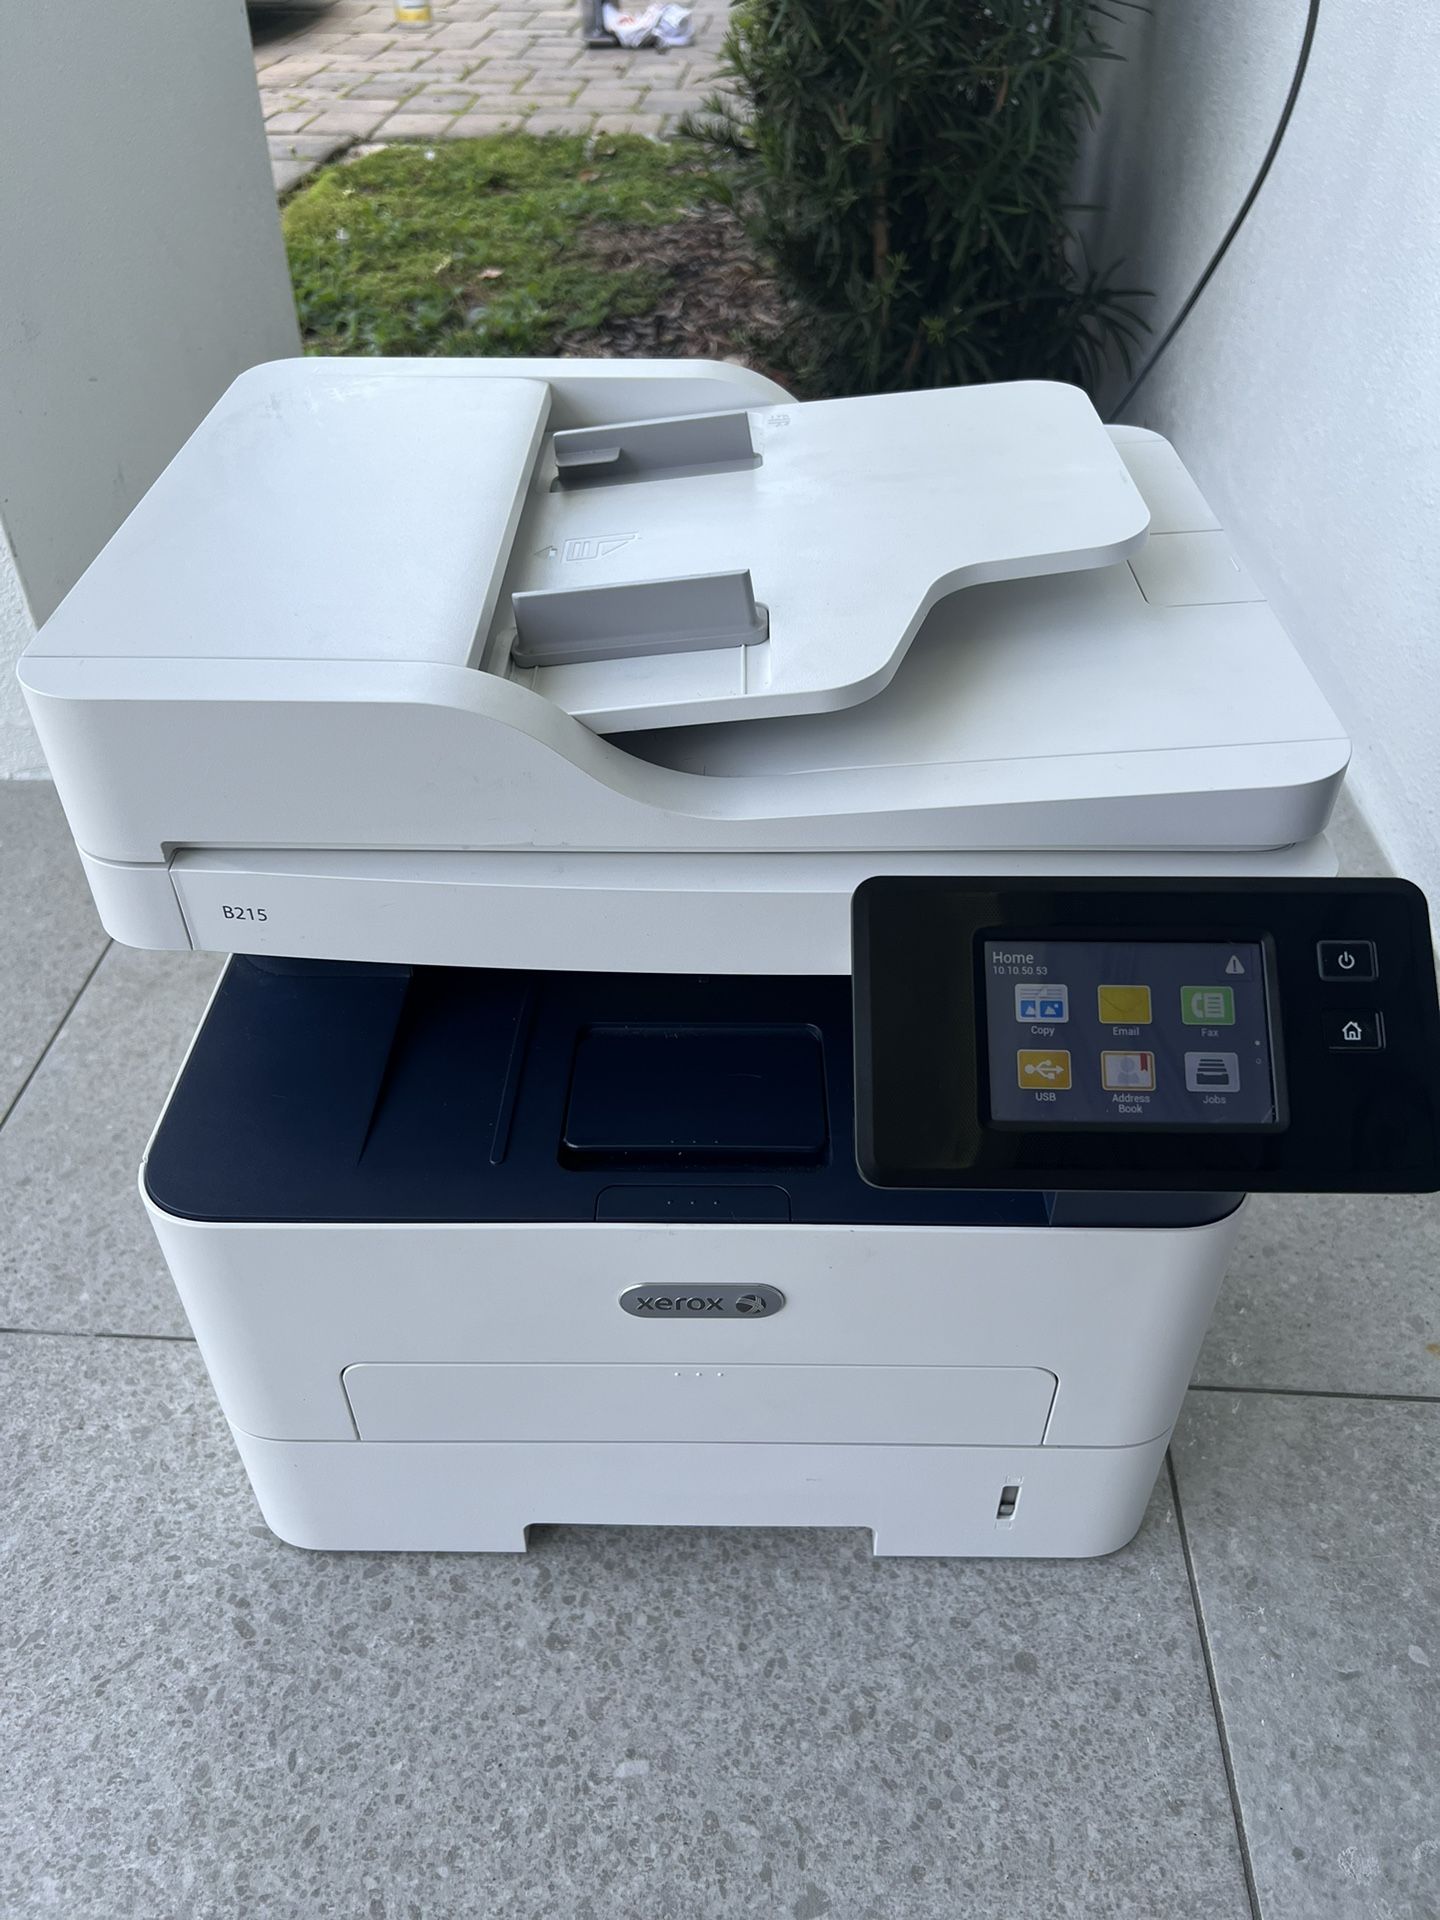 Xerox B215 Printer And Copy Machine